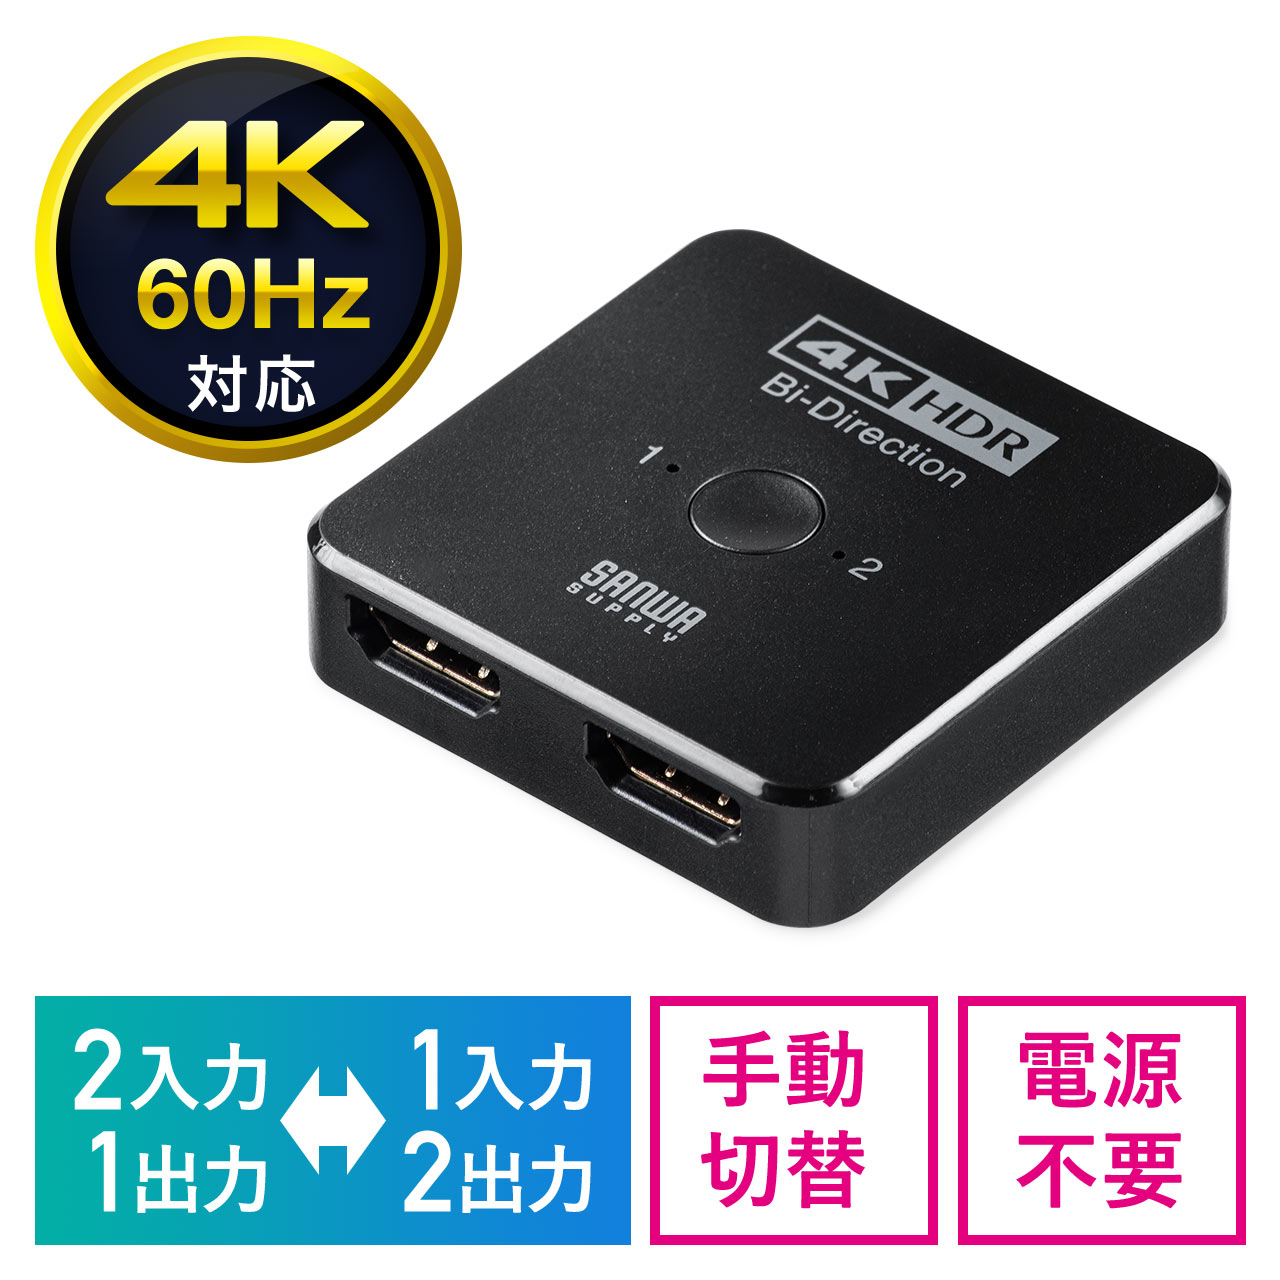 双方向 HDMI切替器 2入力1出力 1入力2出力 4K/60Hz HDR対応 HDMIセレクター PS5対応 400-SW034